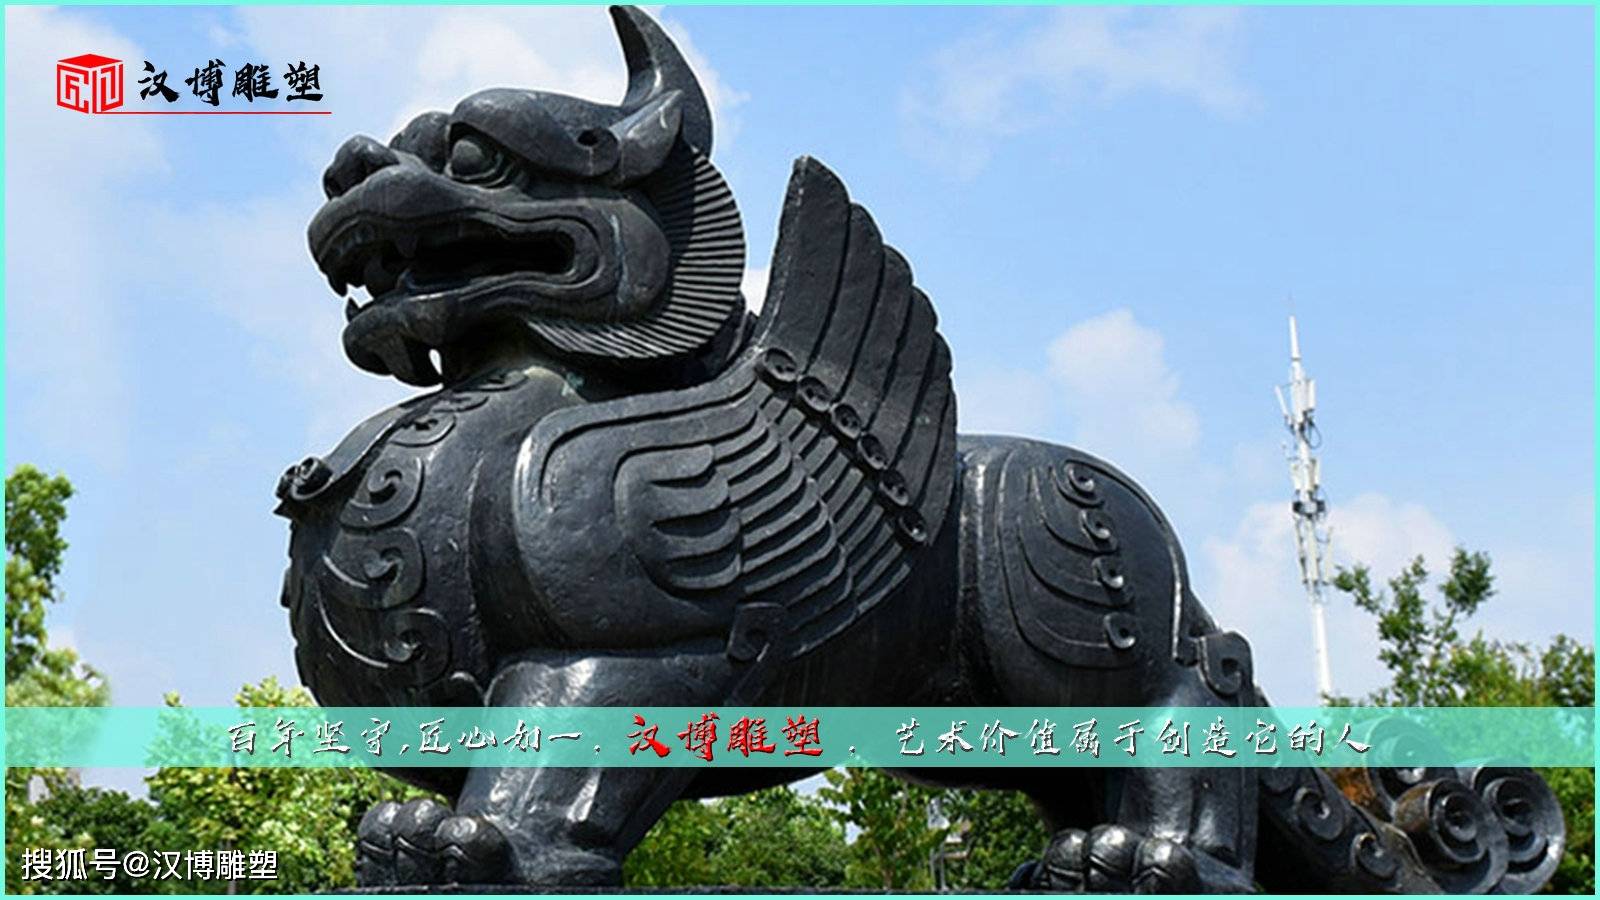 祥瑞神兽獬豸雕像以古老神兽诠释当代雕塑艺术的真谛